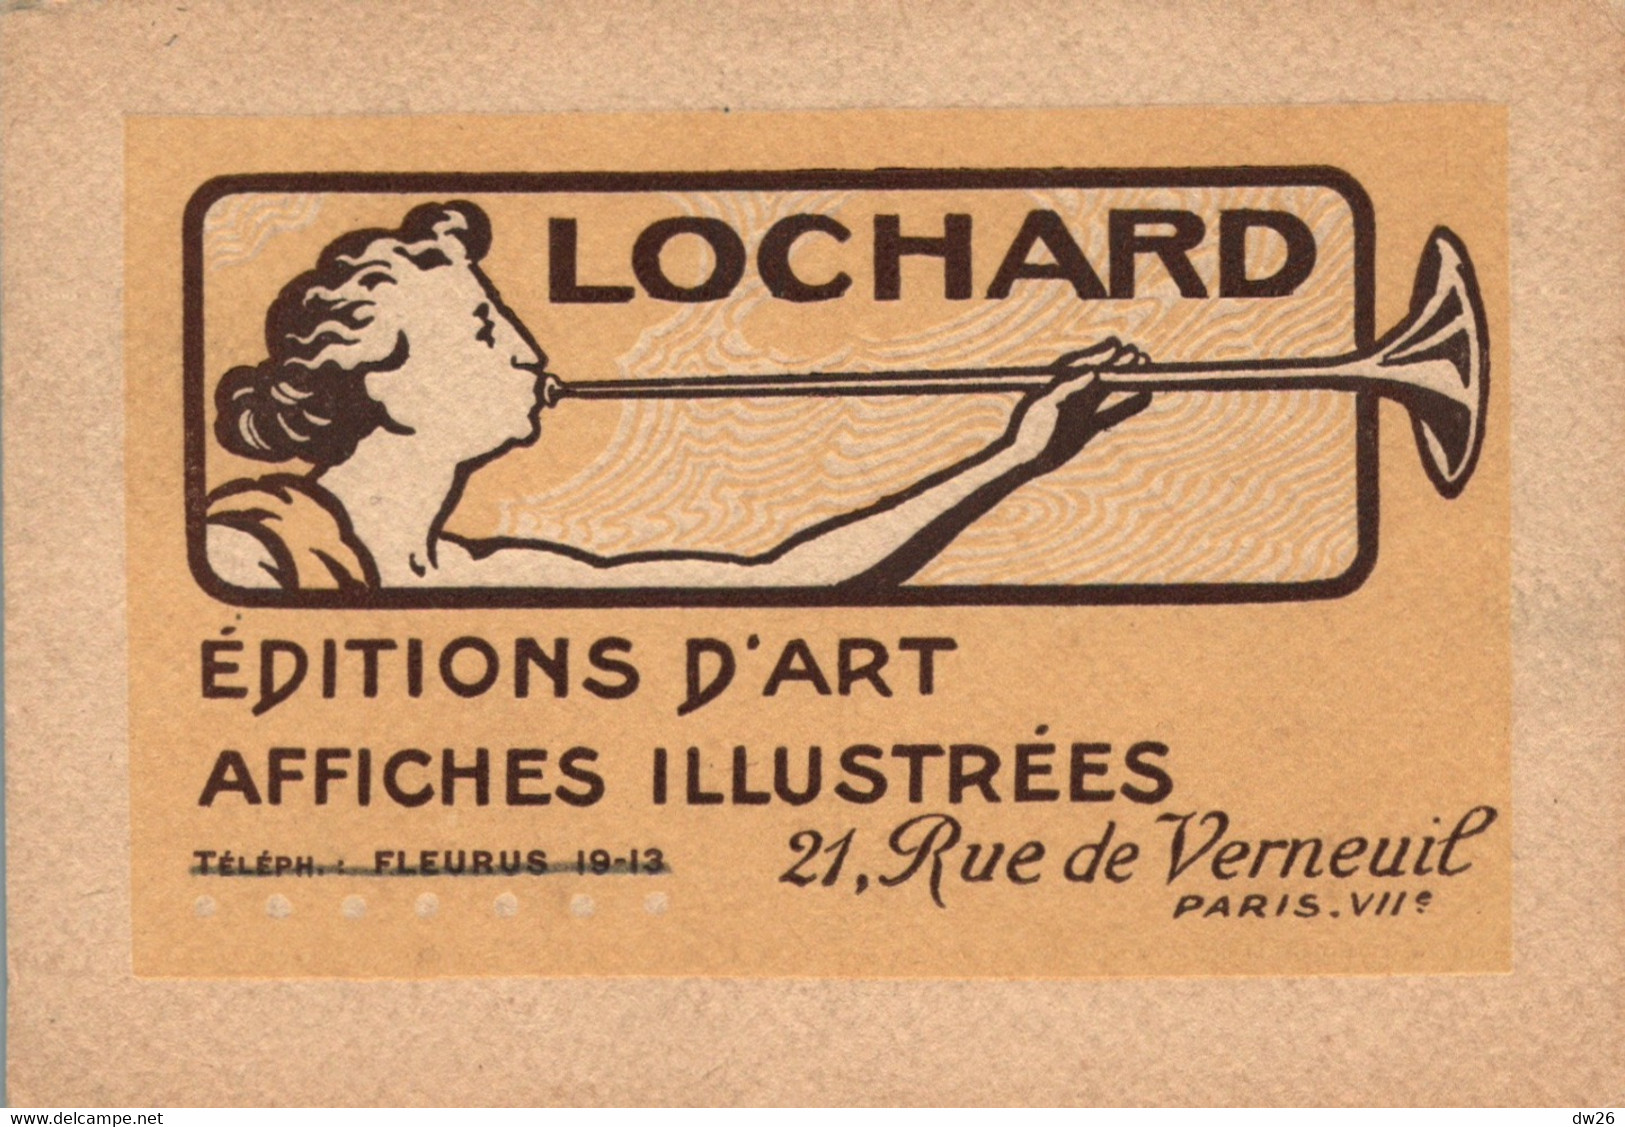 Carte D'Editeur - Publicité Editions D'Art Lochard, Paris - Affiches Illustrées - Reclame